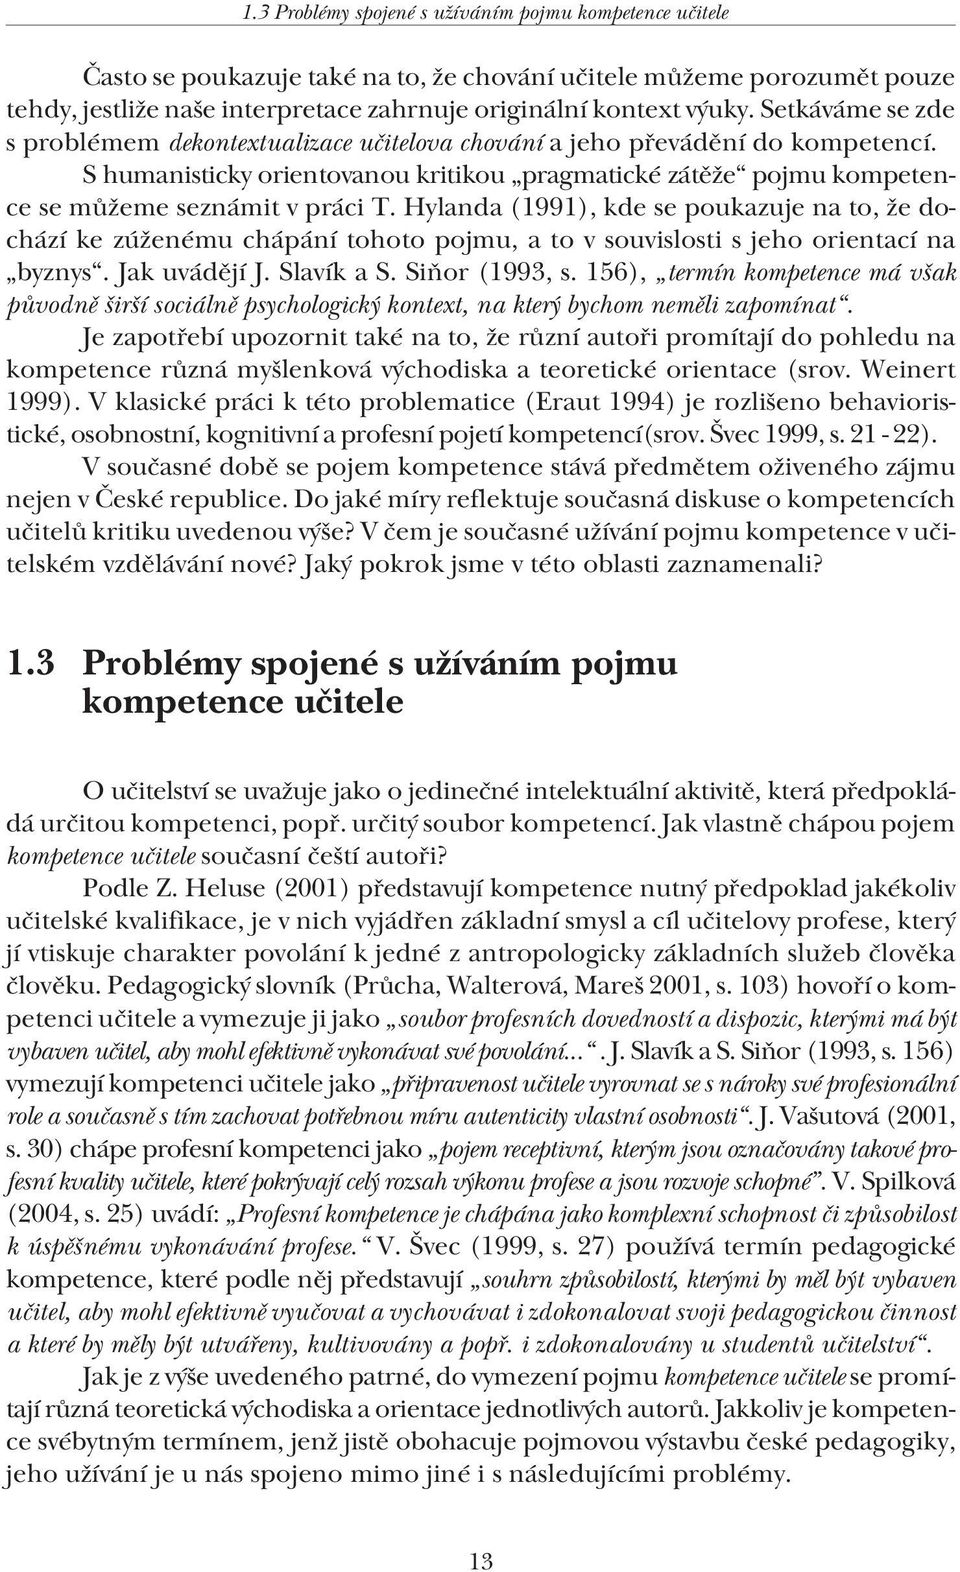 Hylanda (1991), kde se poukazuje na to, že dochází ke zúženému chápání tohoto pojmu, a to v souvislosti s jeho orientací na byznys. Jak uvádějí J. Slavík a S. Siňor (1993, s.